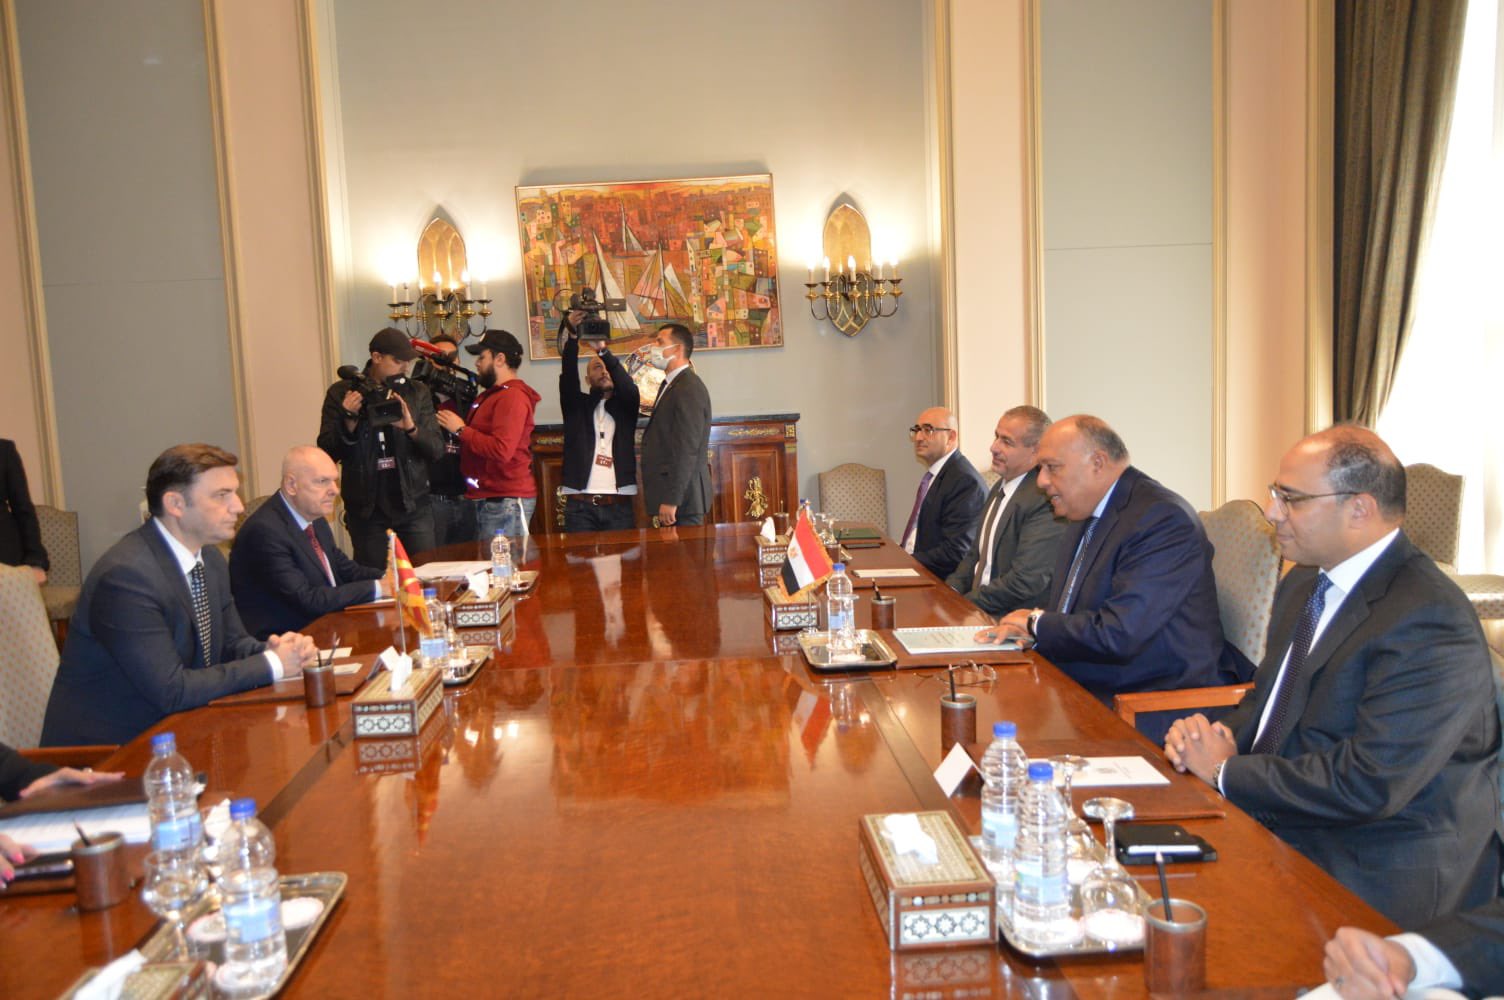 جلسة مباحثات موسعة بين وزيري خارجية مصر ومقدونيا الشمالية